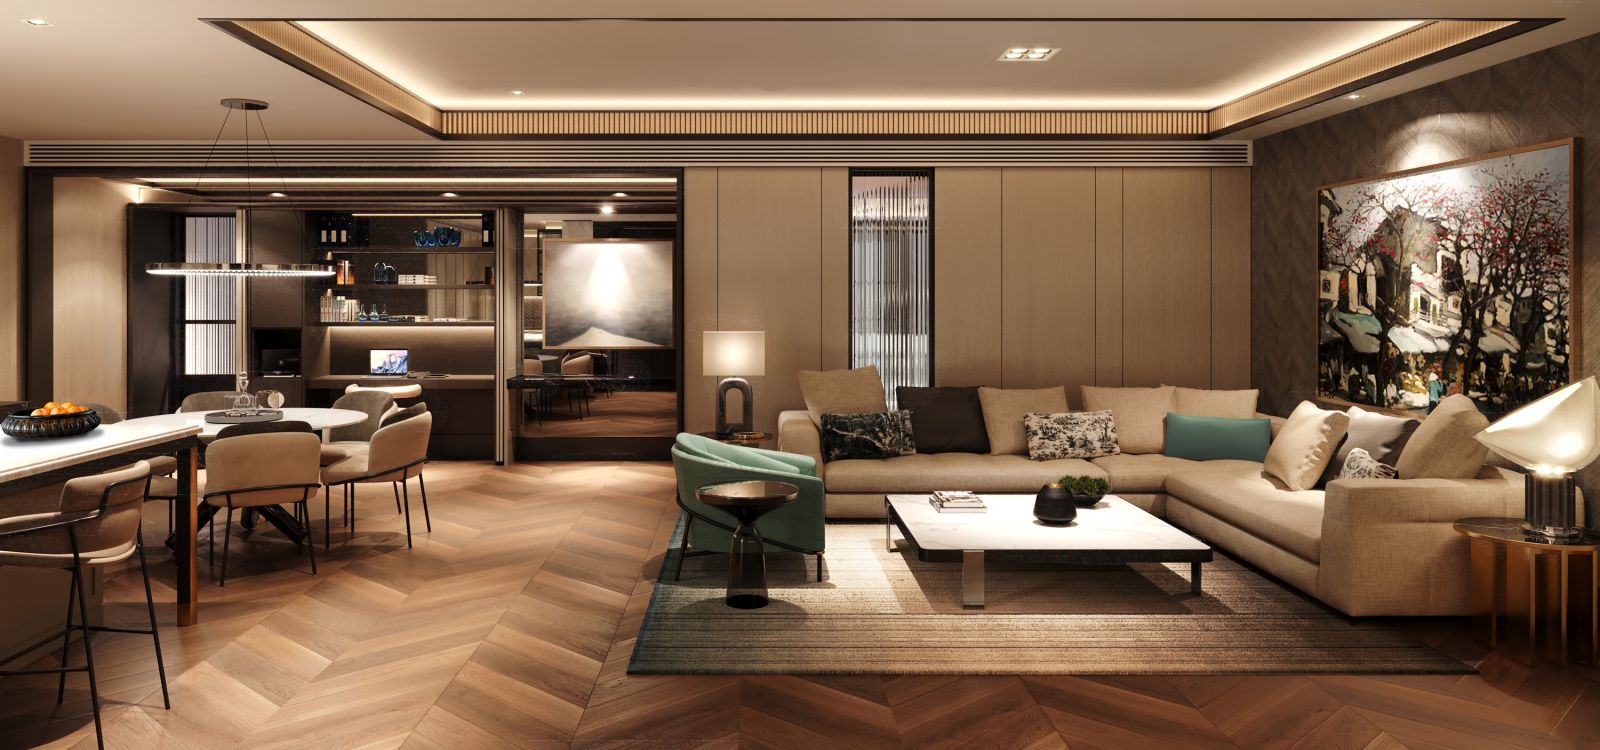 Phối cảnh phòng khách dự án căn hộ hàng hiệu đầu tiên tại Việt Nam mang thương hiệu Ritz-Carlton huyền thoại